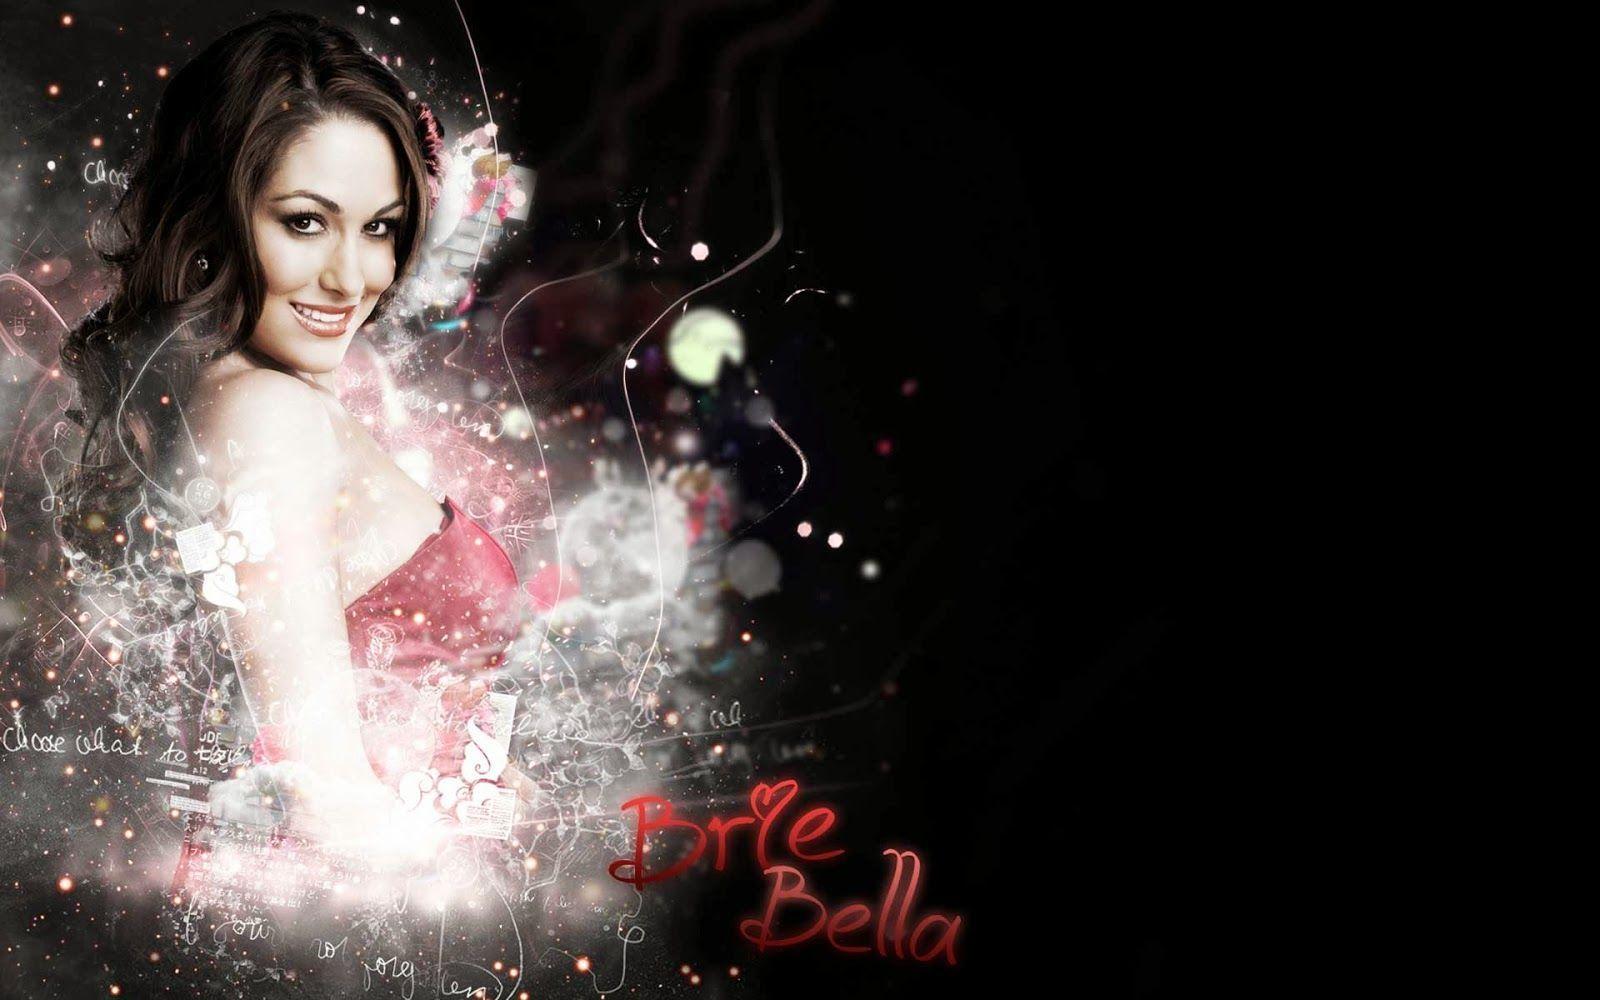 Brie Bella Hd Wallpaper 6. Brie Bella HD Wallpaper